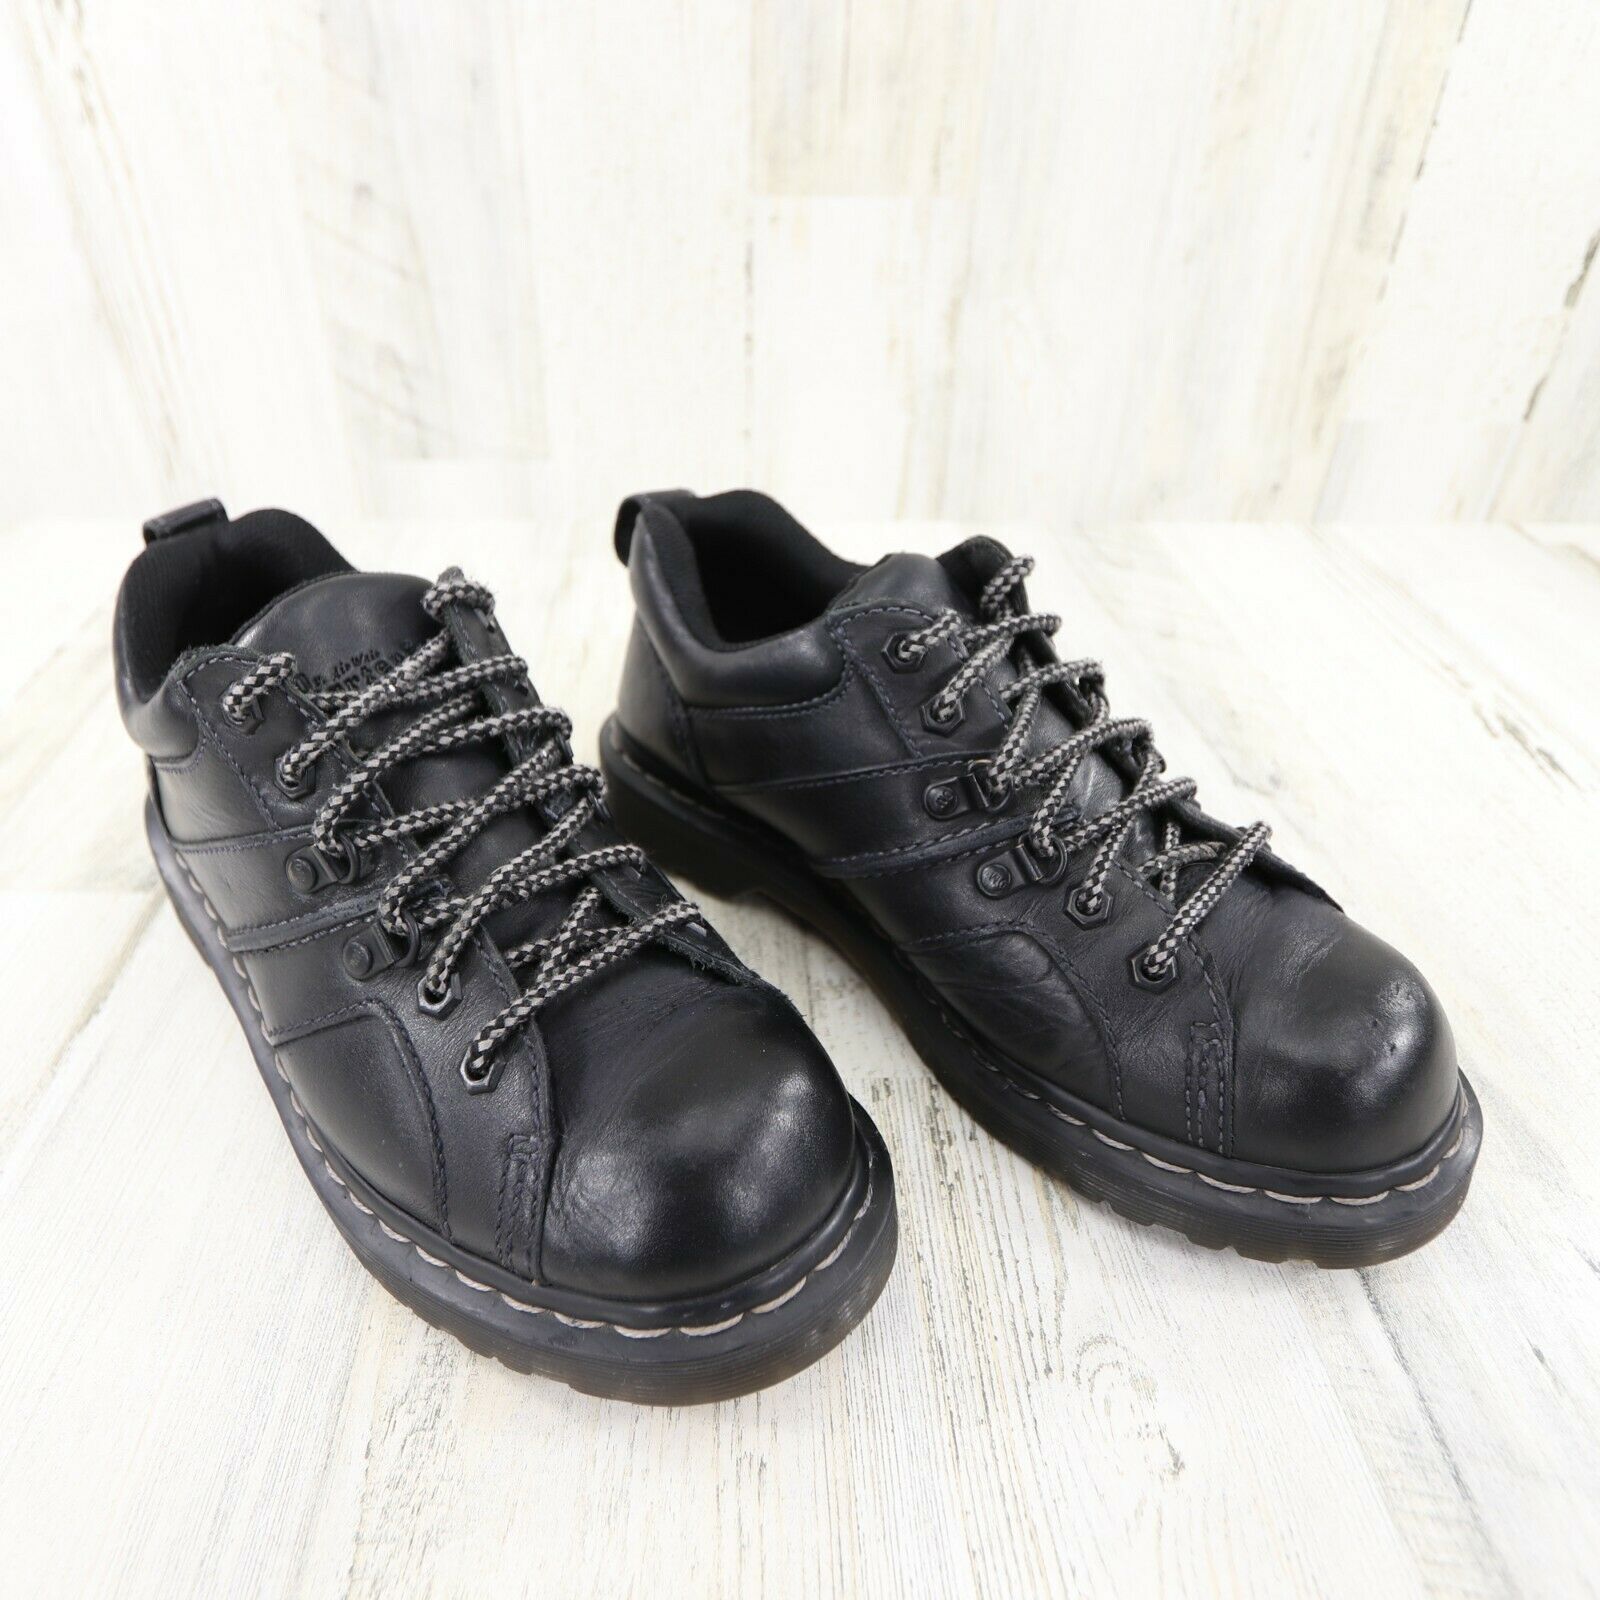 Dr. Doc Martens Finnegan Black Leather Shoes Men's Size 7 Women's Size 8